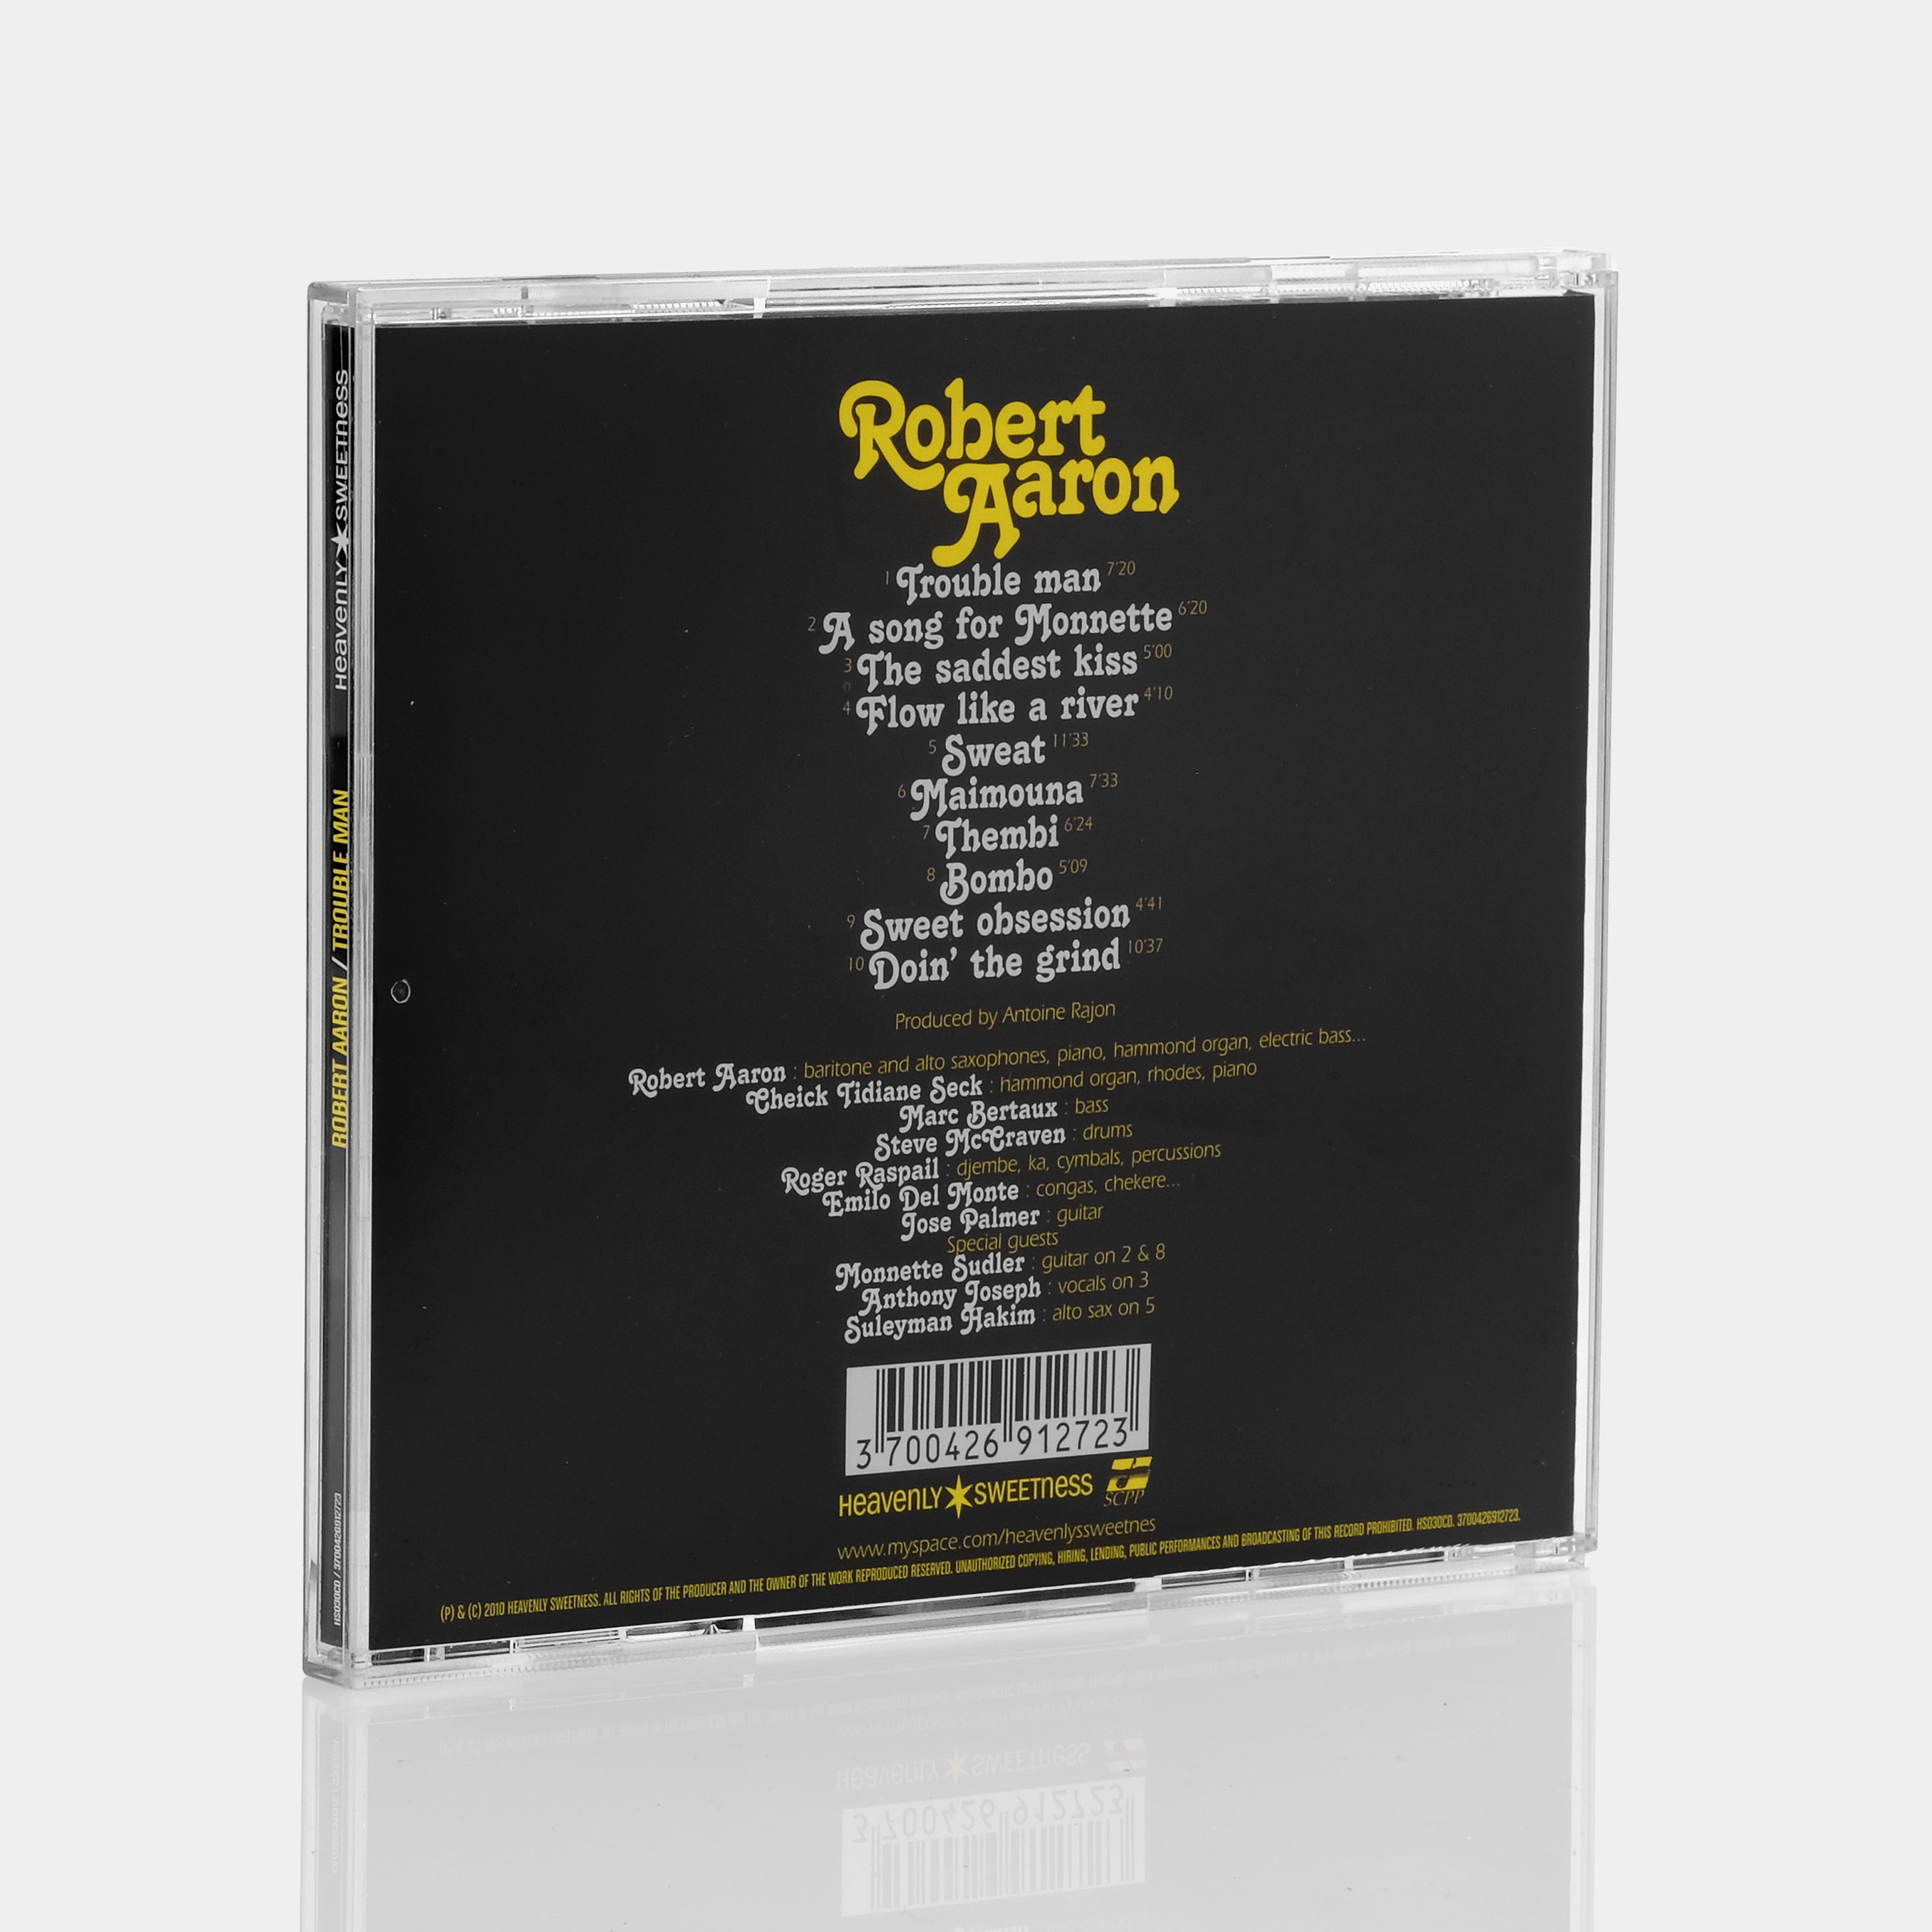 Robert Aaron - Trouble Man CD